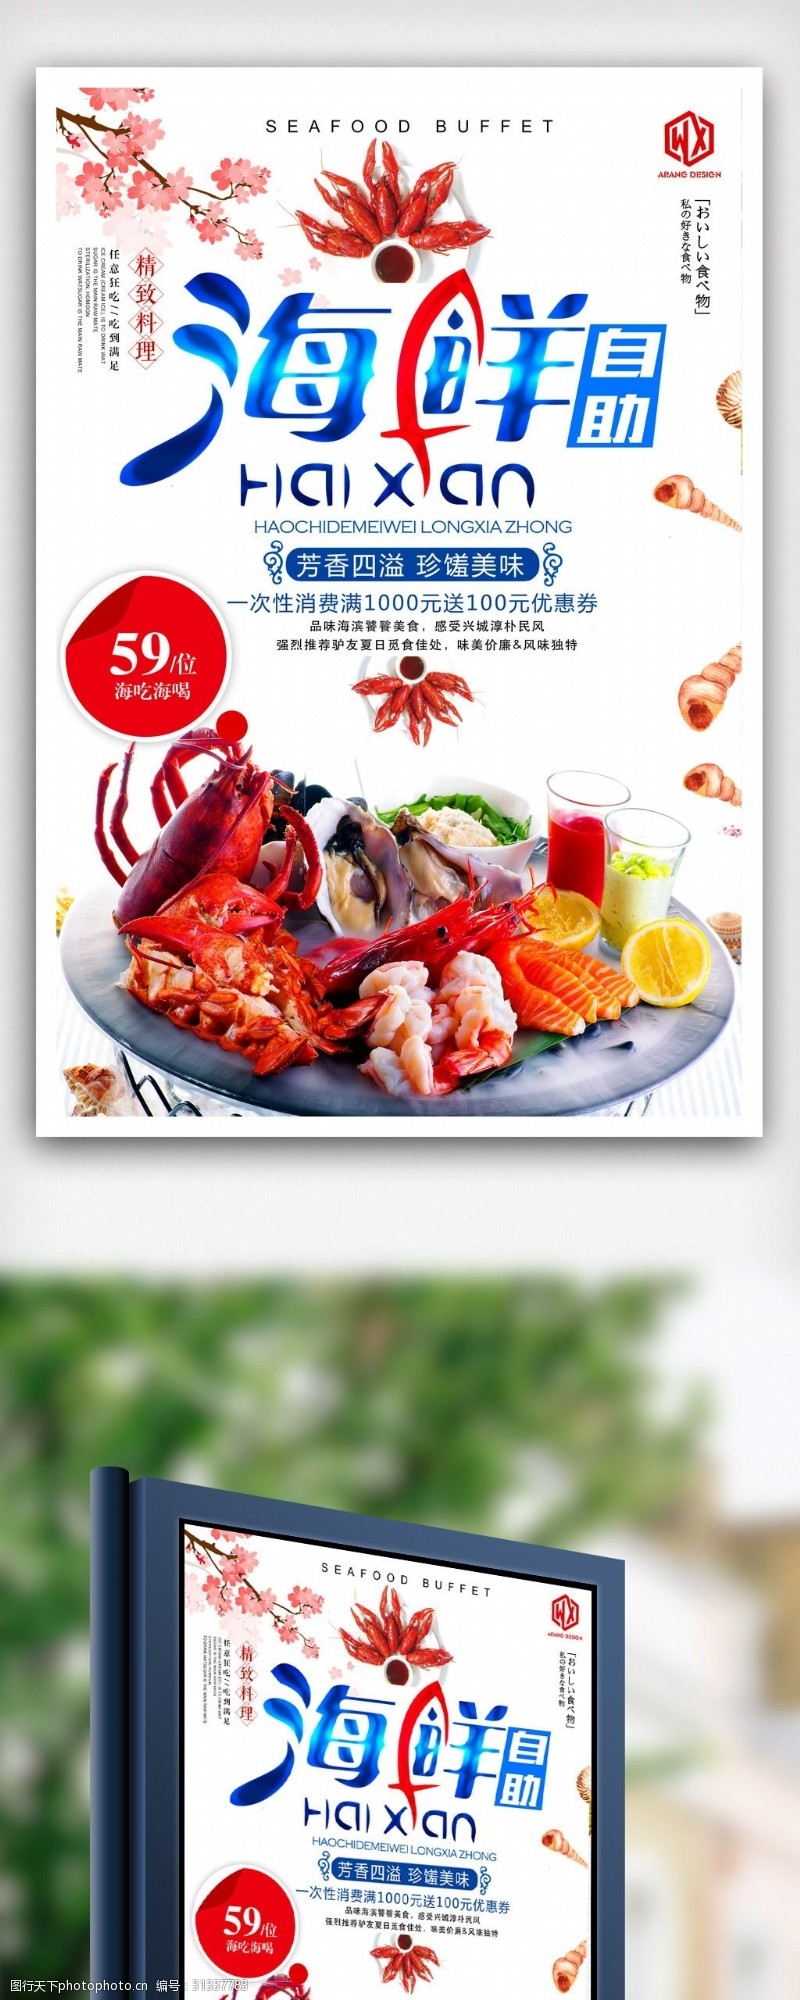 日本韩国料理海鲜自助餐美食餐饮海报设计.psd